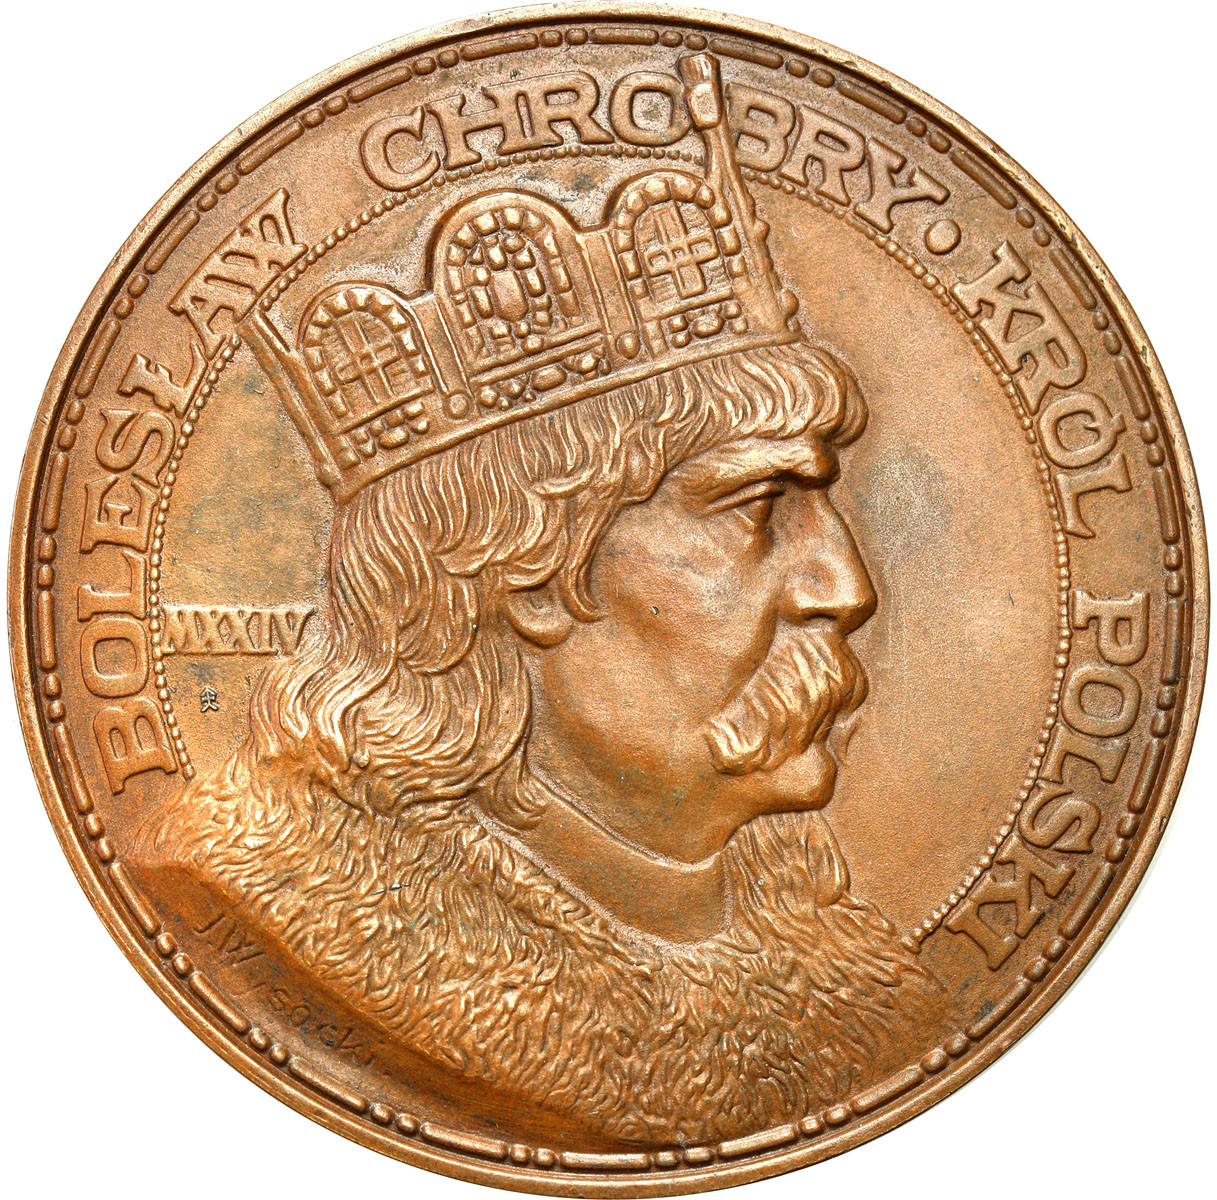 Polska II RP. Medal 1924 Bolesław Chrobry, brąz – PIĘKNY